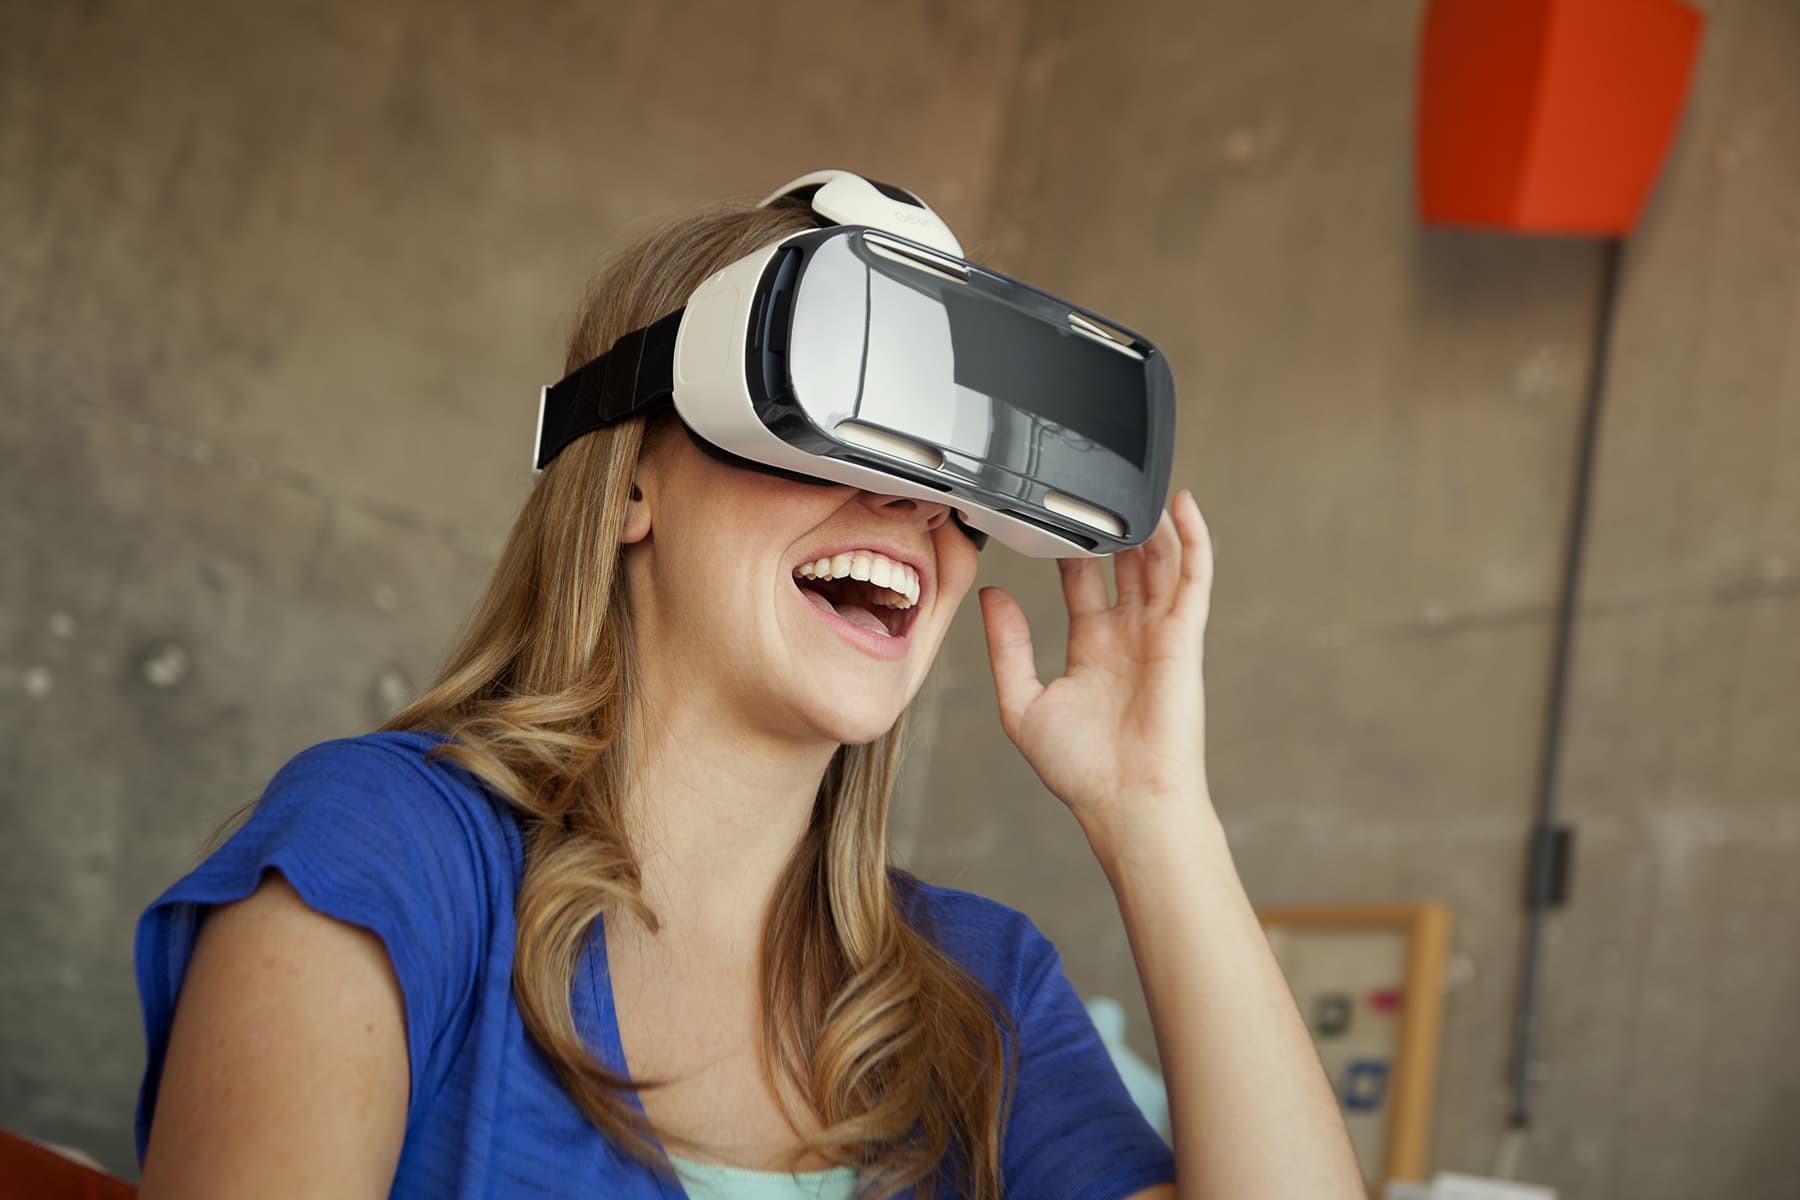 Виар новые. Шлем виртуальной реальности LG 360 VR. Очки дополненной реальности Samsung. Виар очки самсунг. Очкивир туальнайряльности.